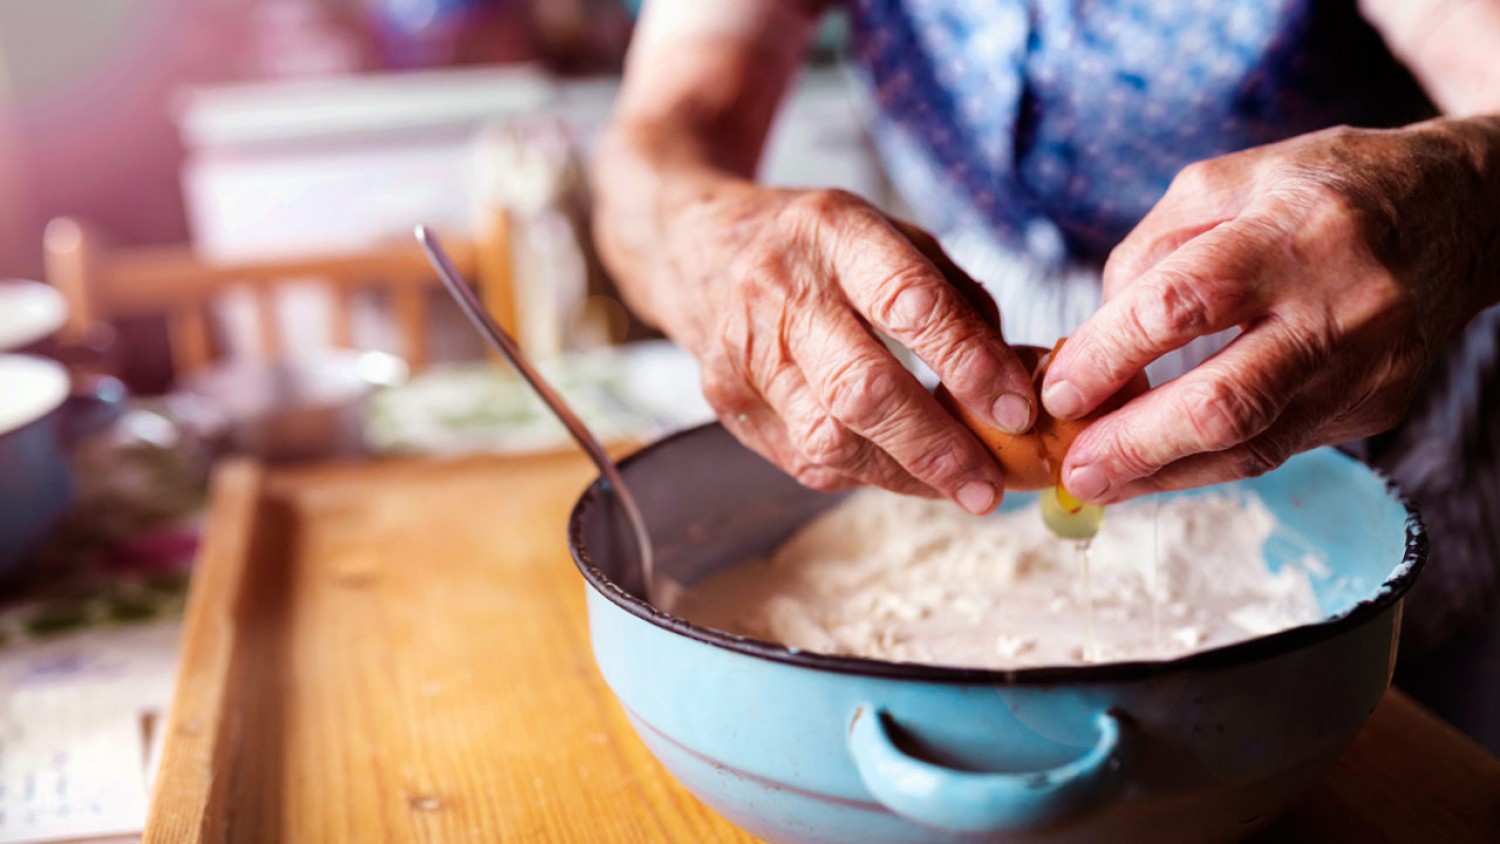 Nagymamáink házi praktikái - 36 jó tanács